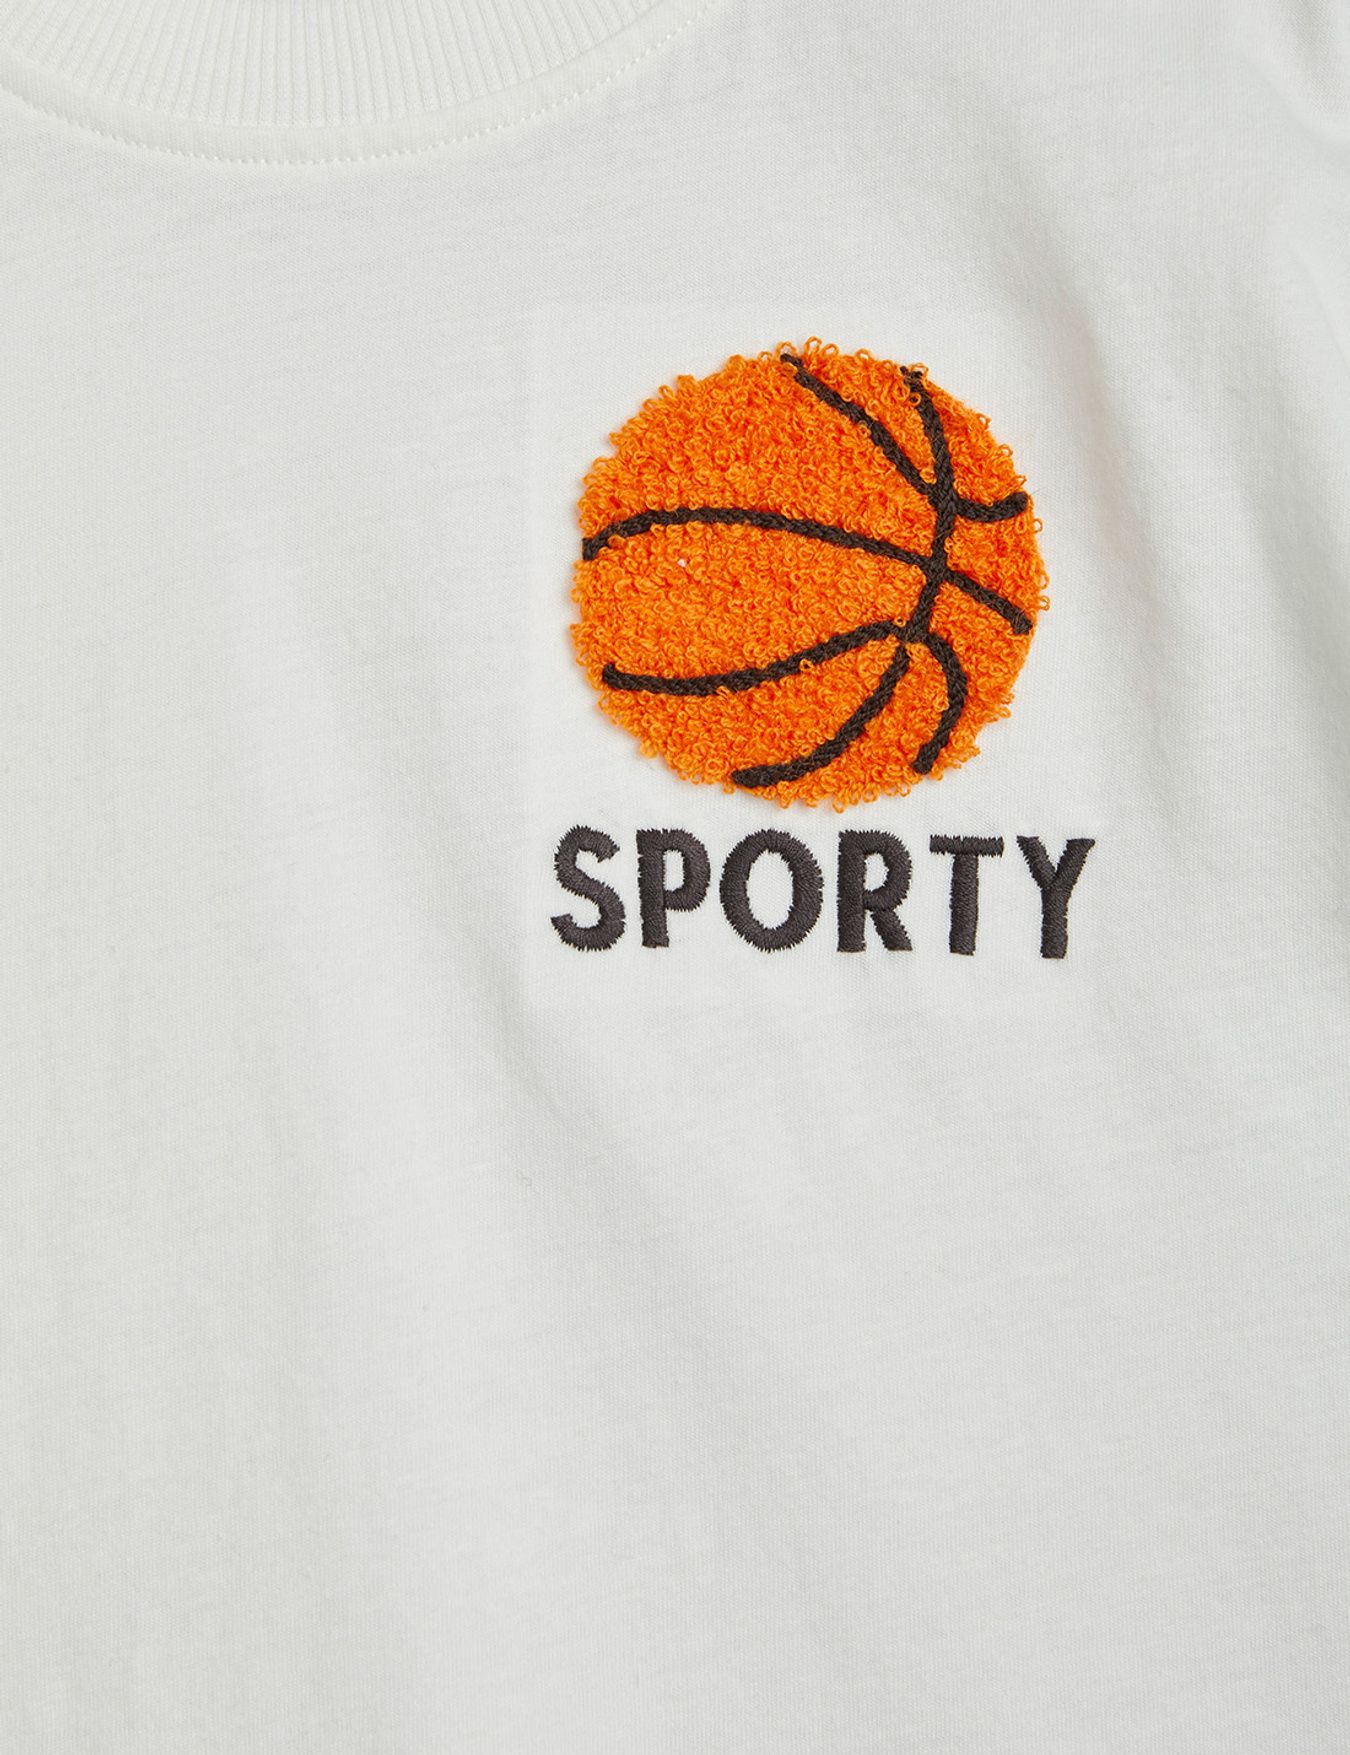 Mini Rodini - T-Shirt Brodé Basketball